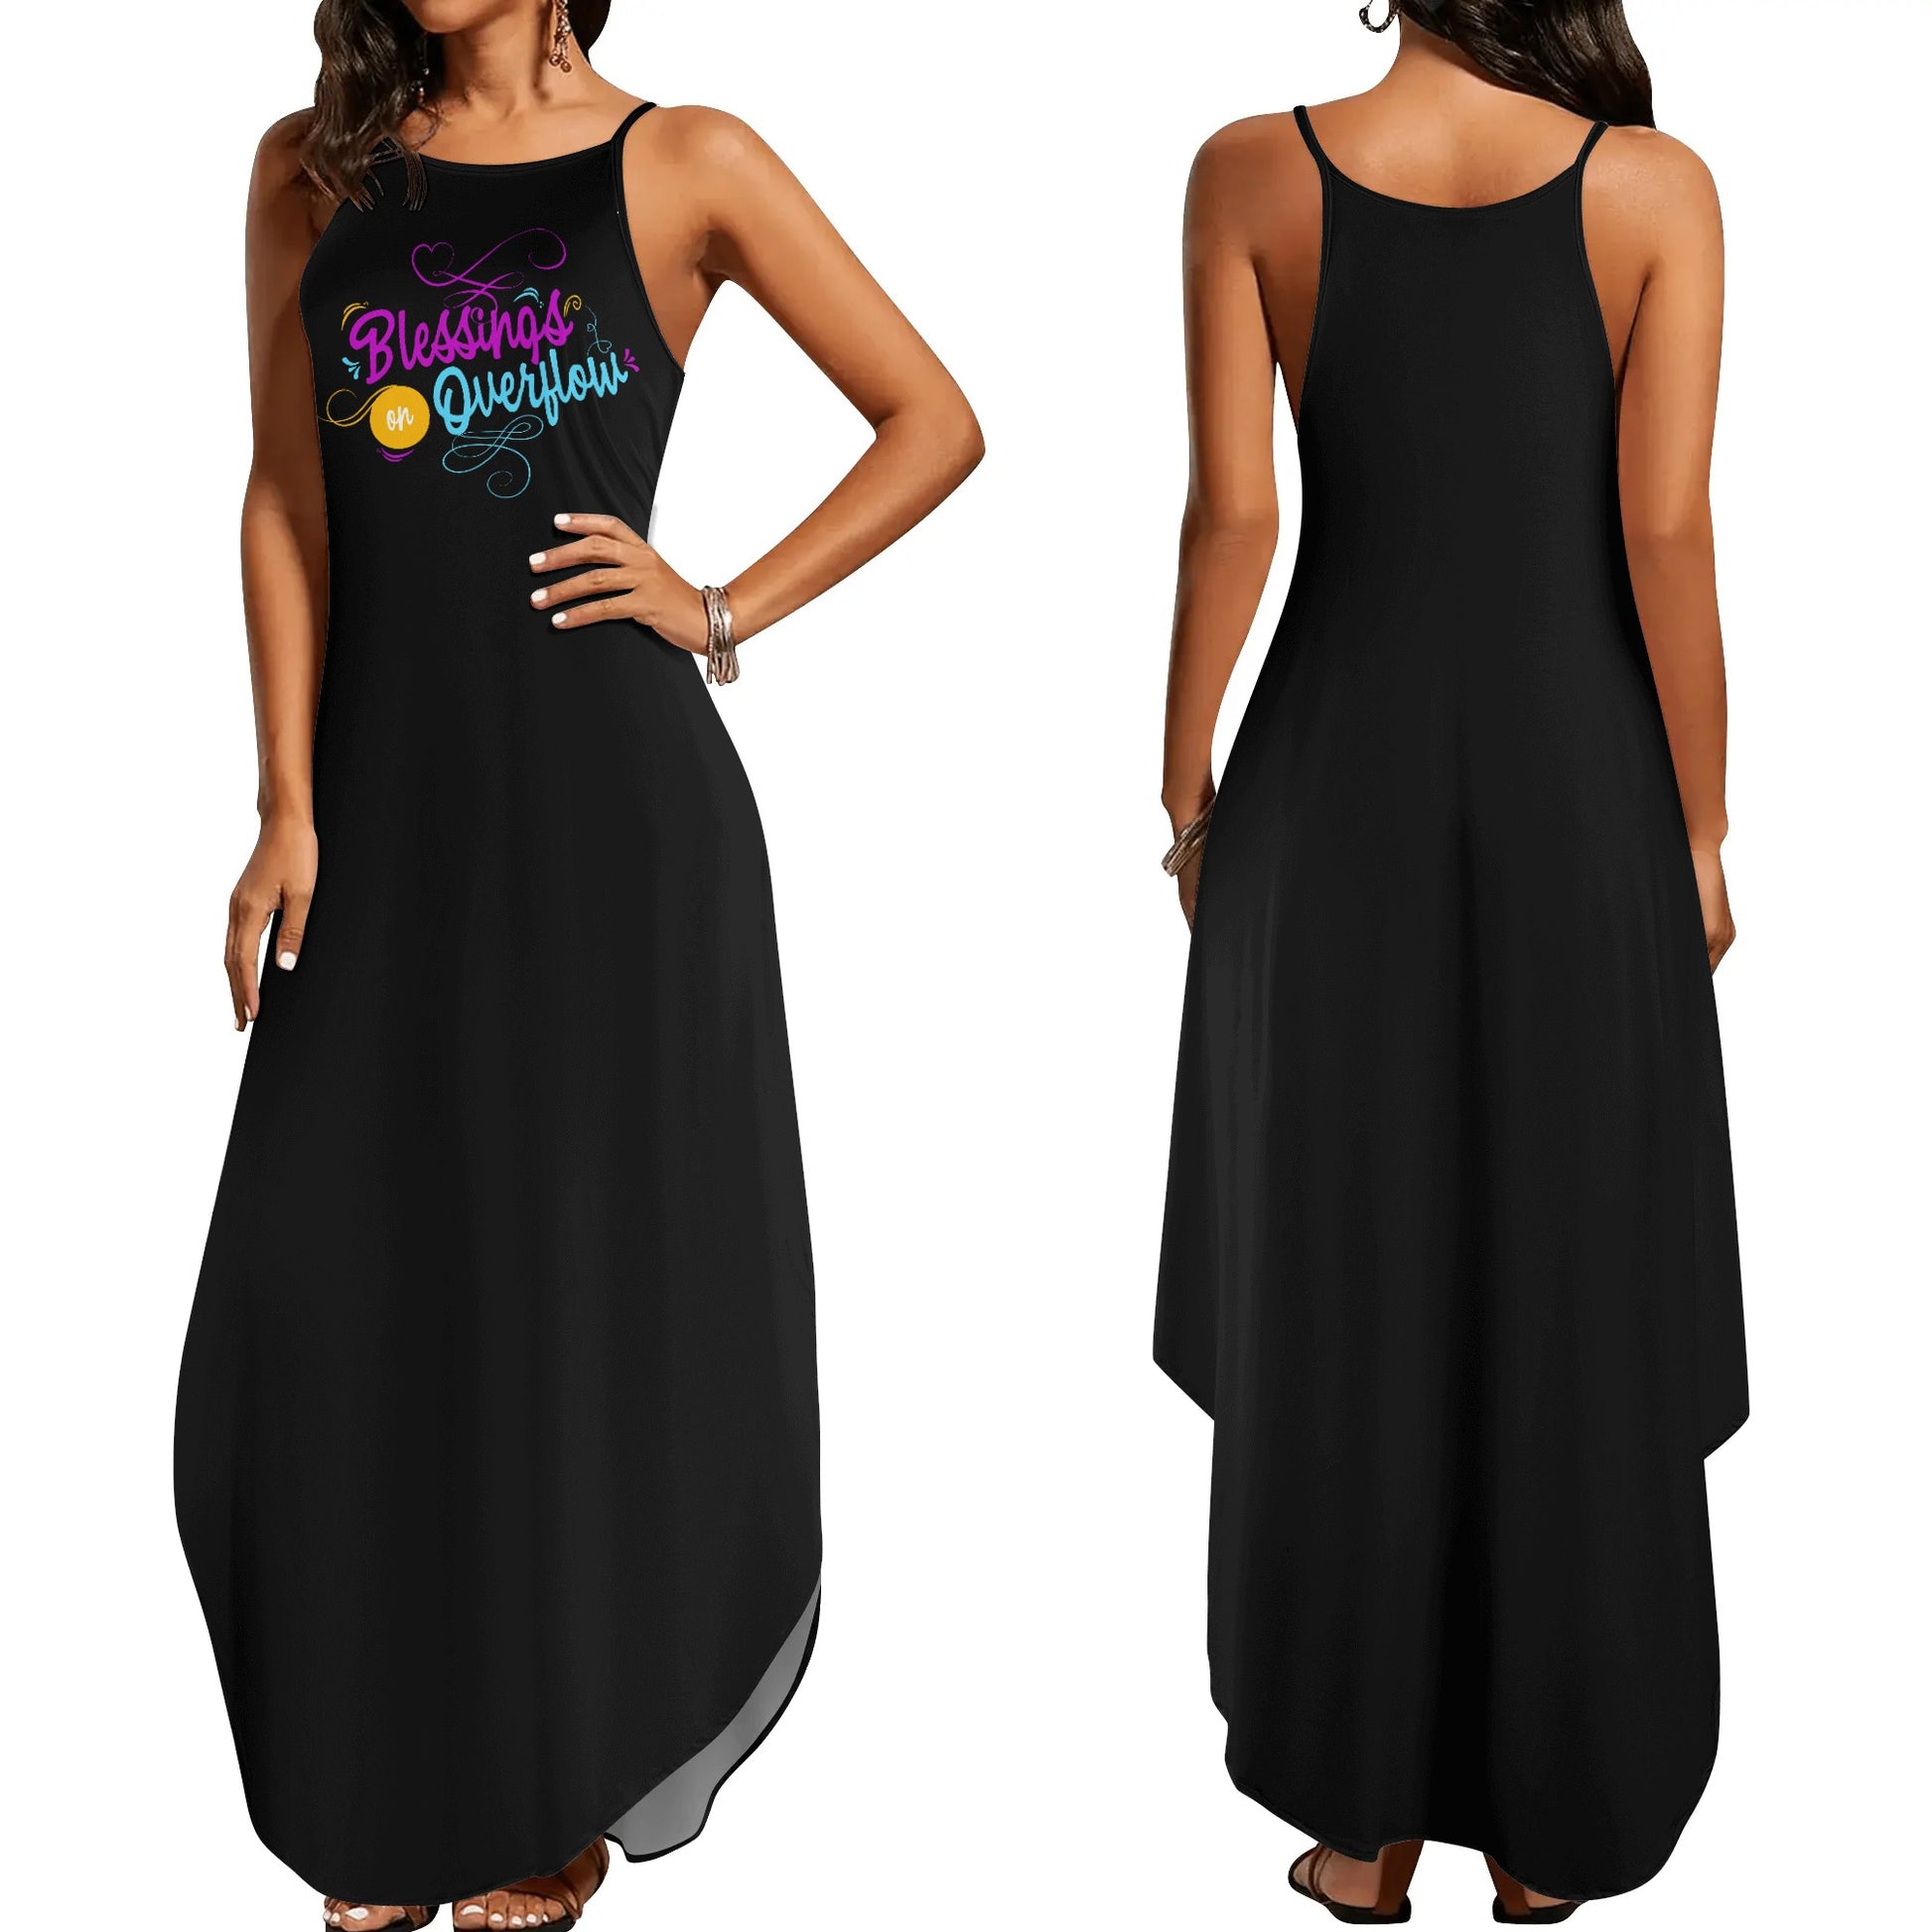 Blessings On Overflow Womens Christian Elegant Sleeveless Summer Maxi Dress popcustoms